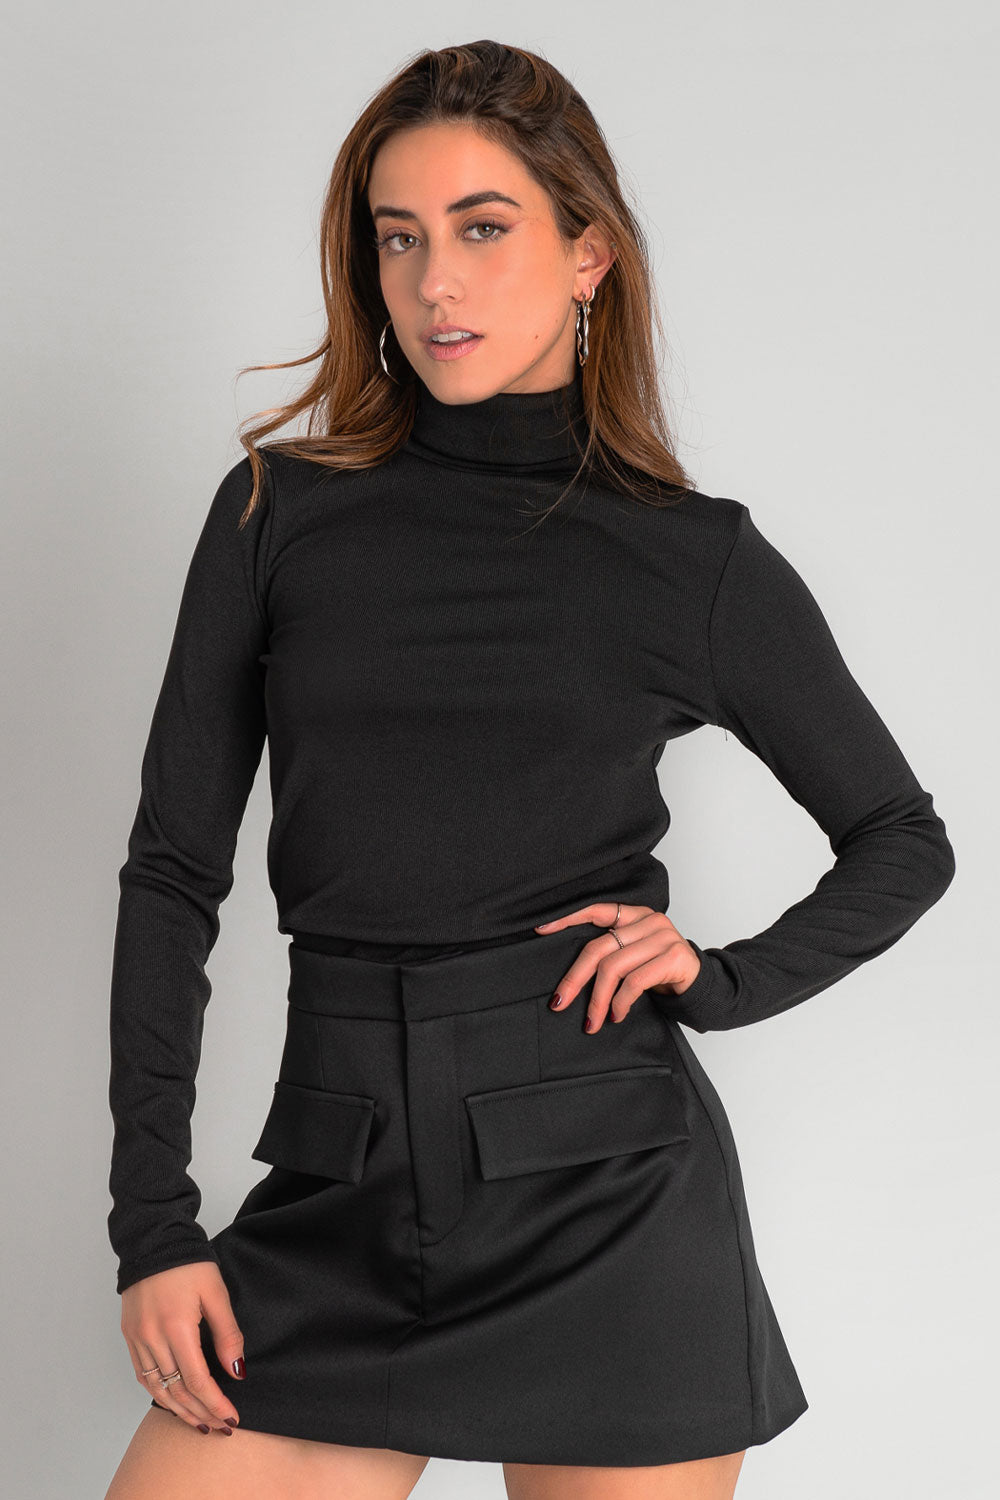 Falda short corto de cintura alta con pretina, corte en a, bolsillos delanteros decorativos con cartera y cierre frontal con broche y cremallera oculta.